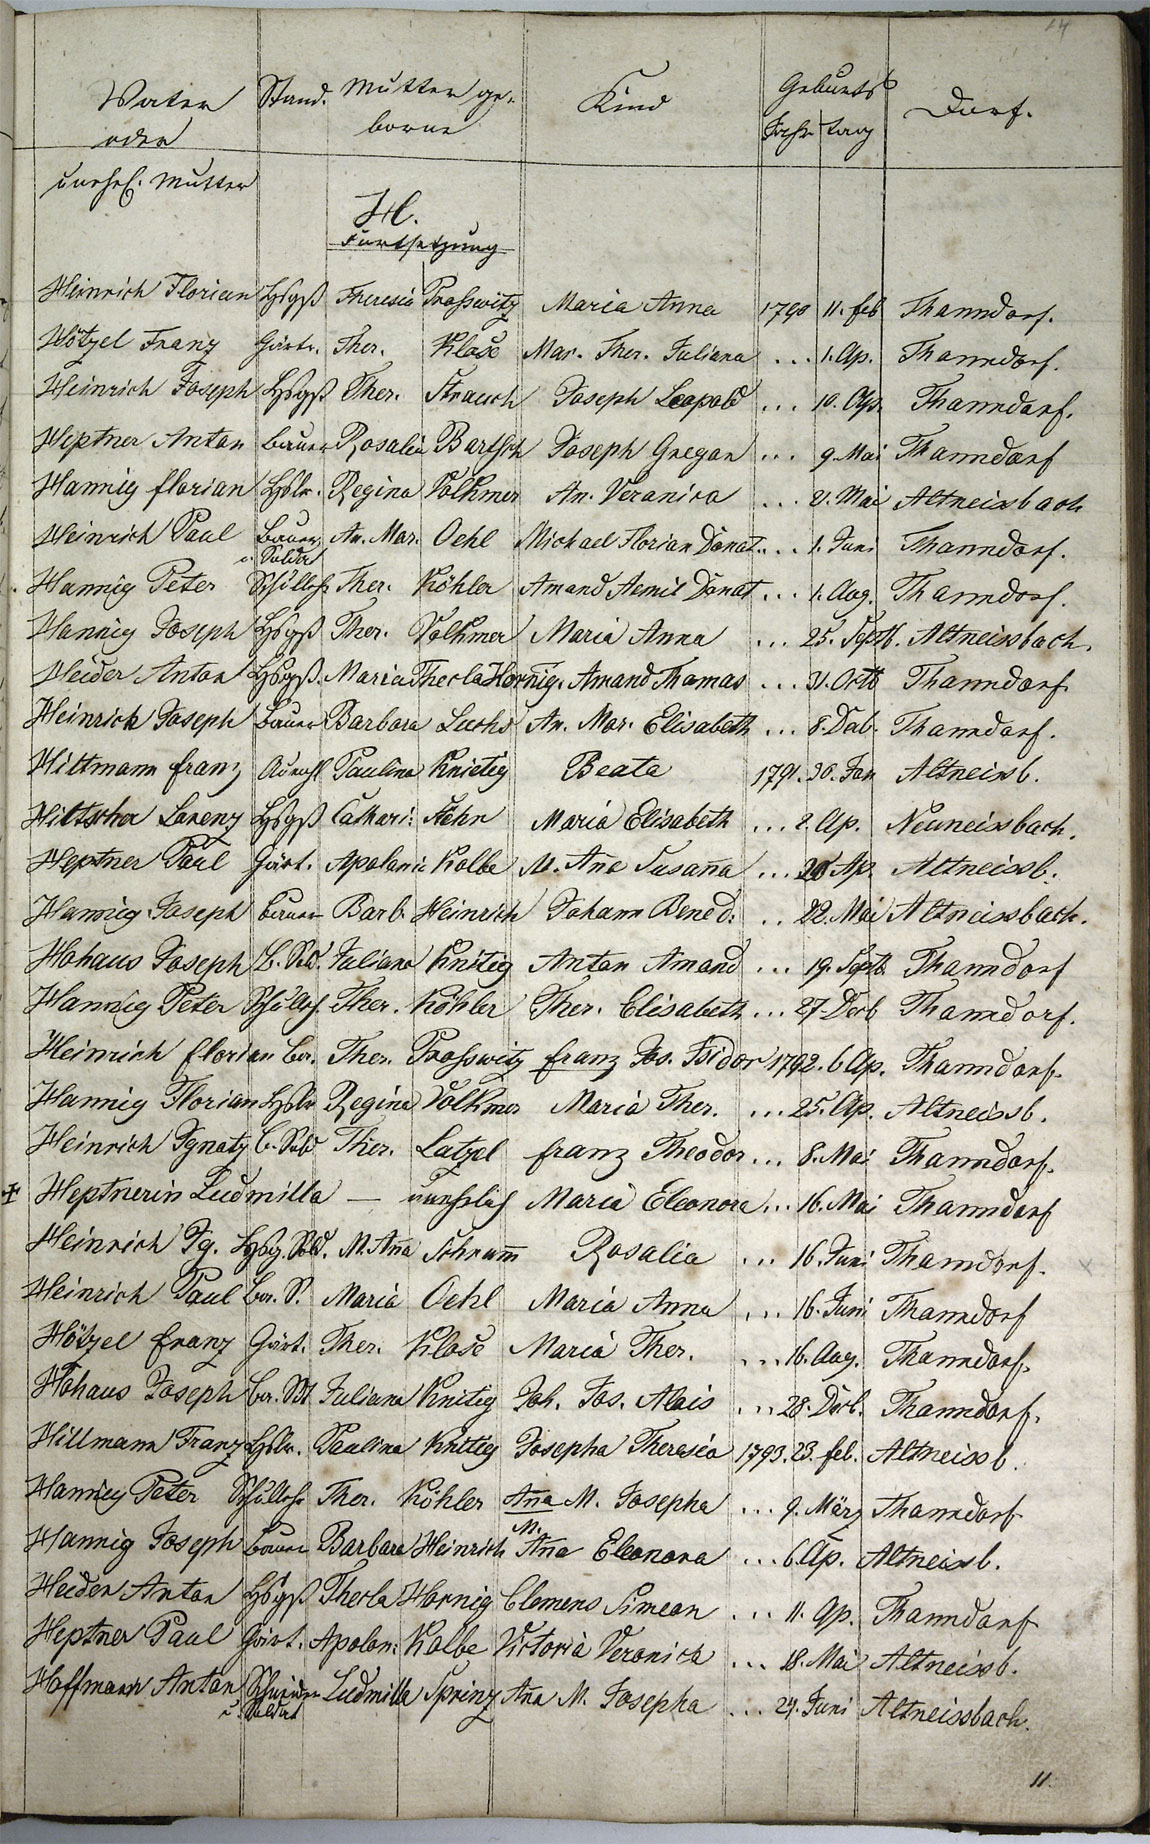 Taufregister 1770 - 1889 Seite 50